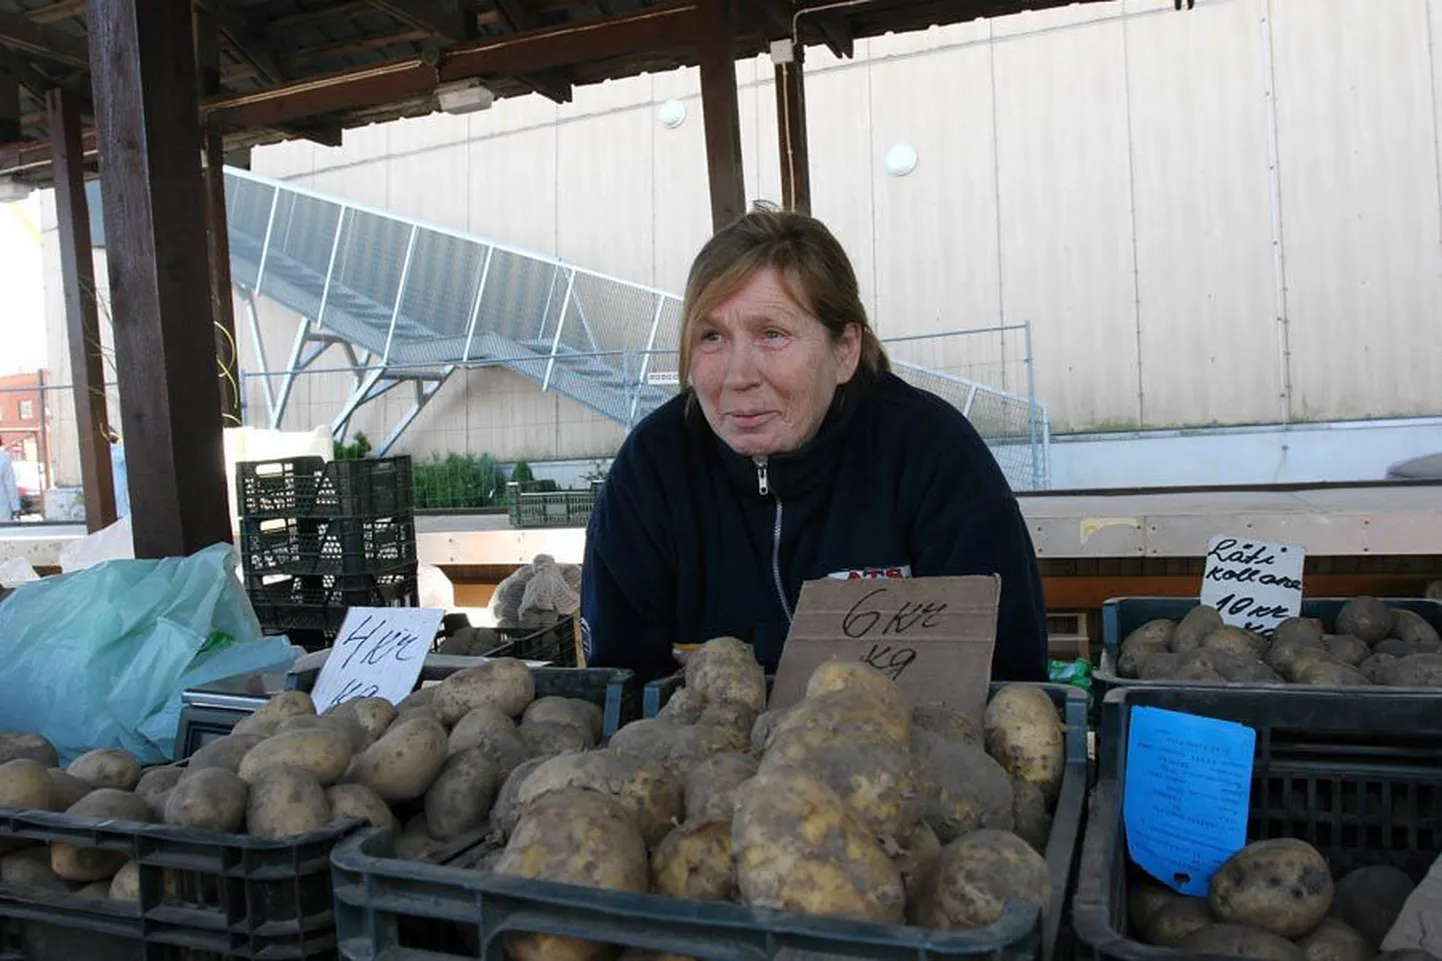 Kui teiste talunike kartulid on üsna väiksed, siis Hilja Ojamets saab uhkustada pirakate mugulatega.